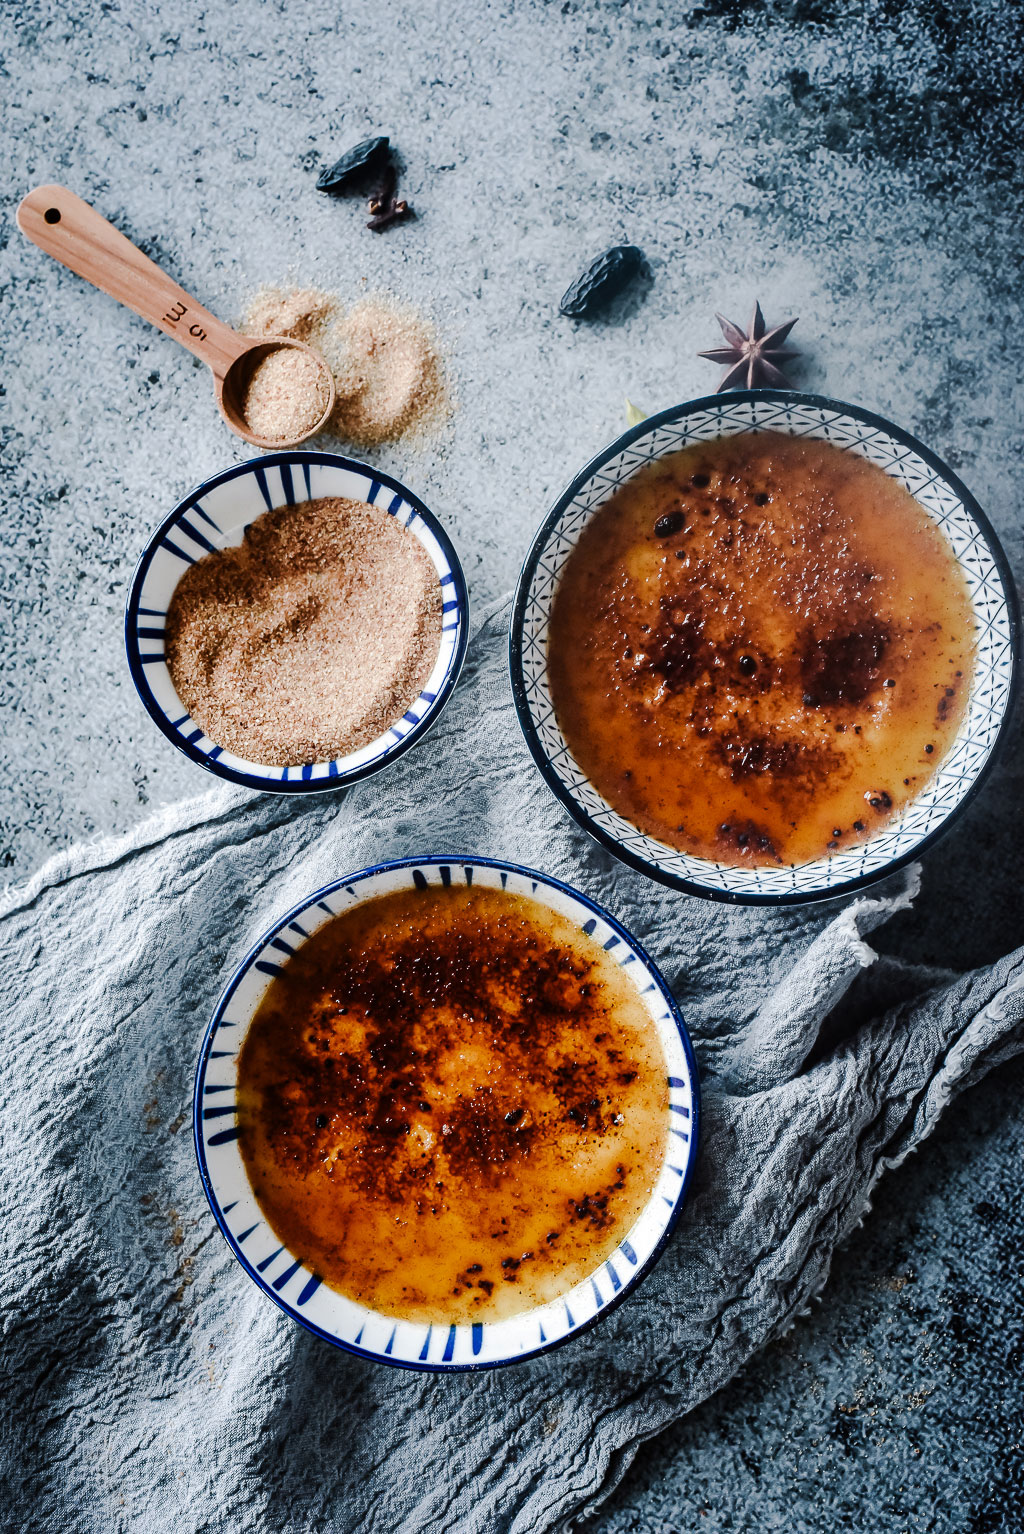 Lust auf einen Käsegang der besonderen Art? Dann versuch mal diese salzige Crème brûlée mit Epoisses! Das Rezept ist einfach, genial und gelingt immer.